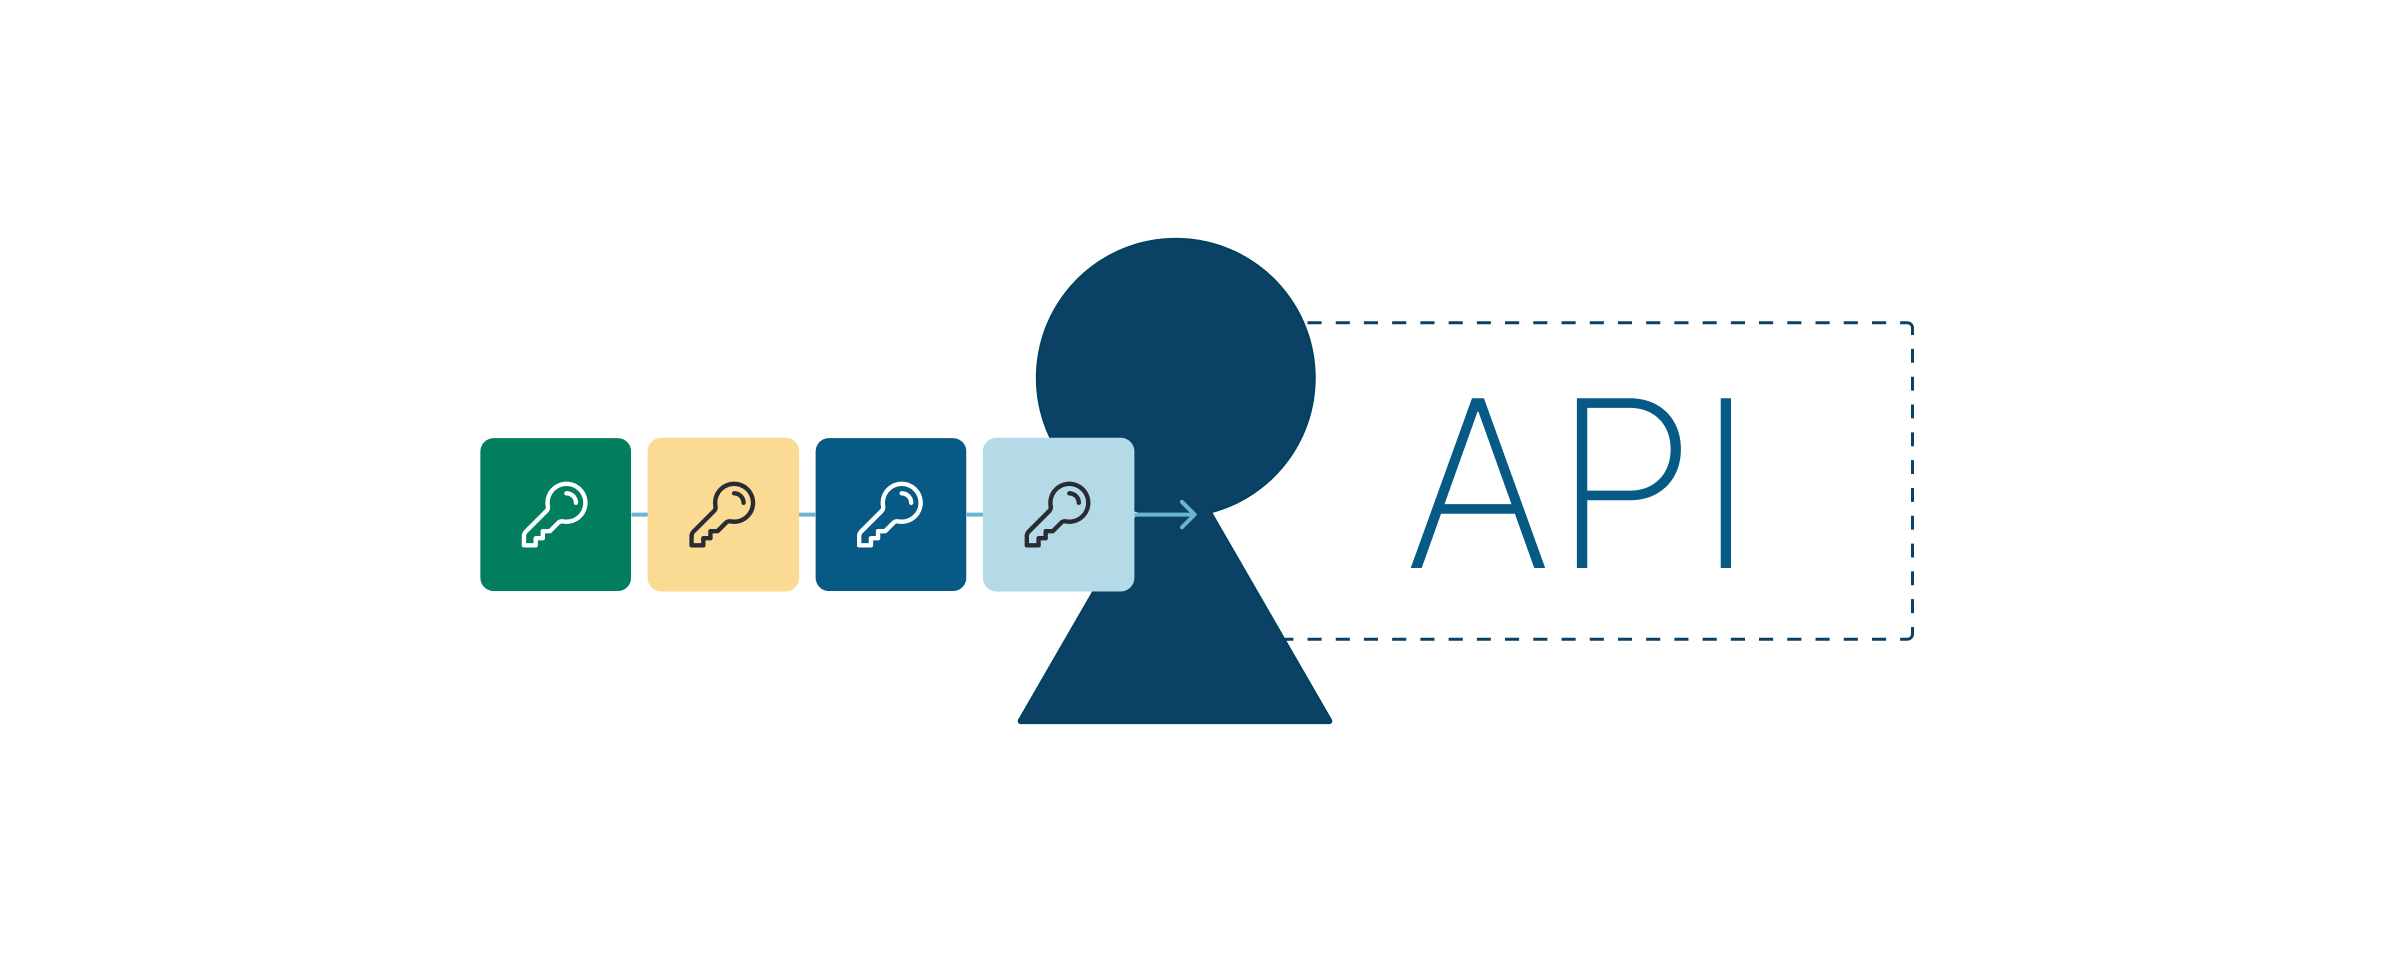 Ilustracja przedstawiająca cztery nowe klucze API służące do bezpiecznej autoryzacji